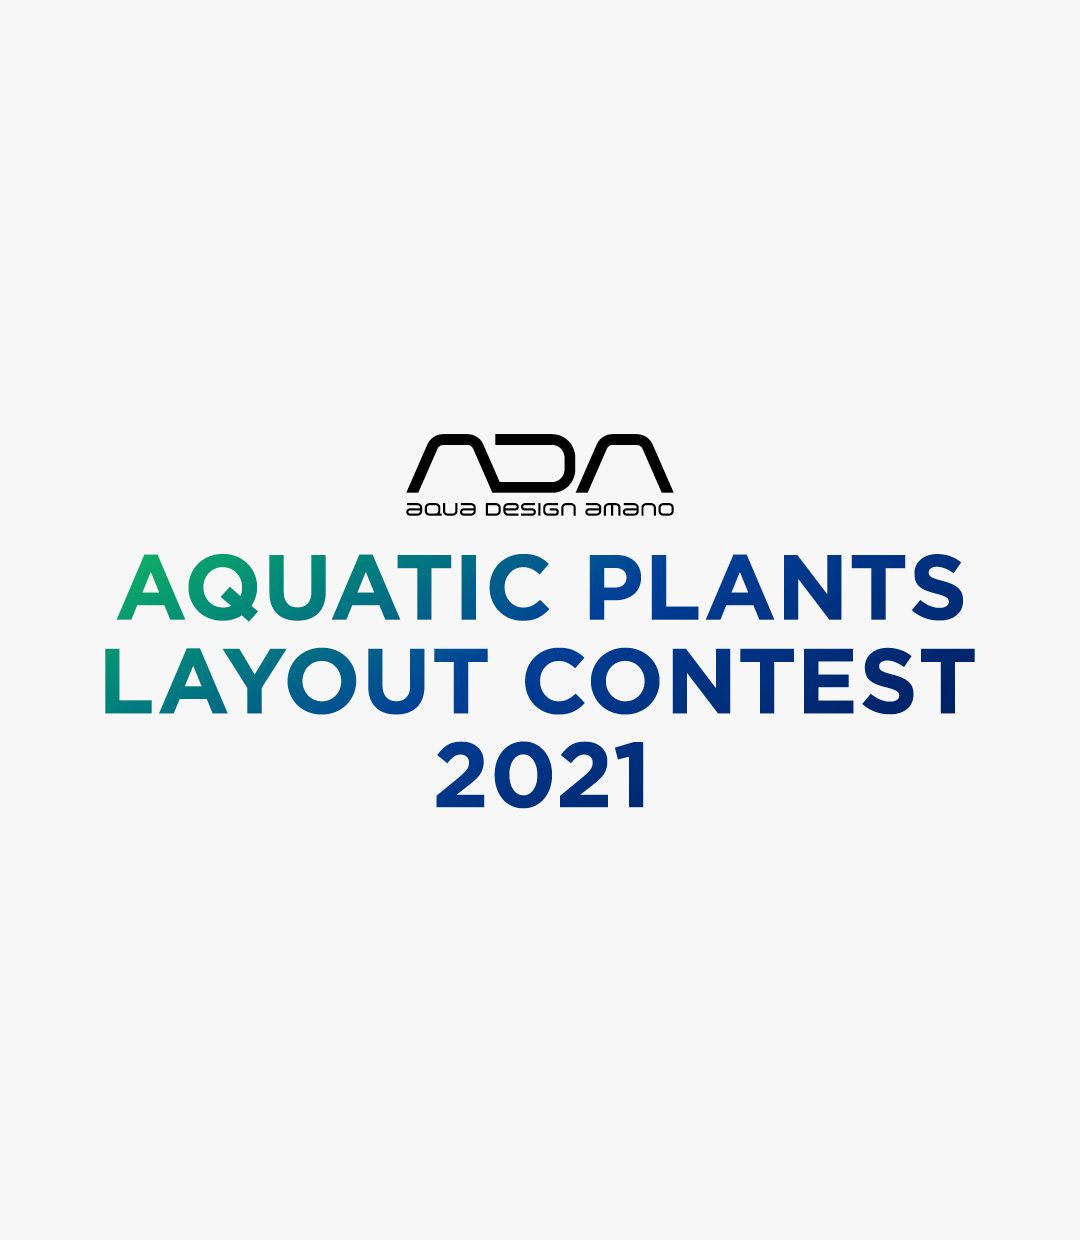 ADA AQUATIC PLANTS LAYOUT CONTEST 2021